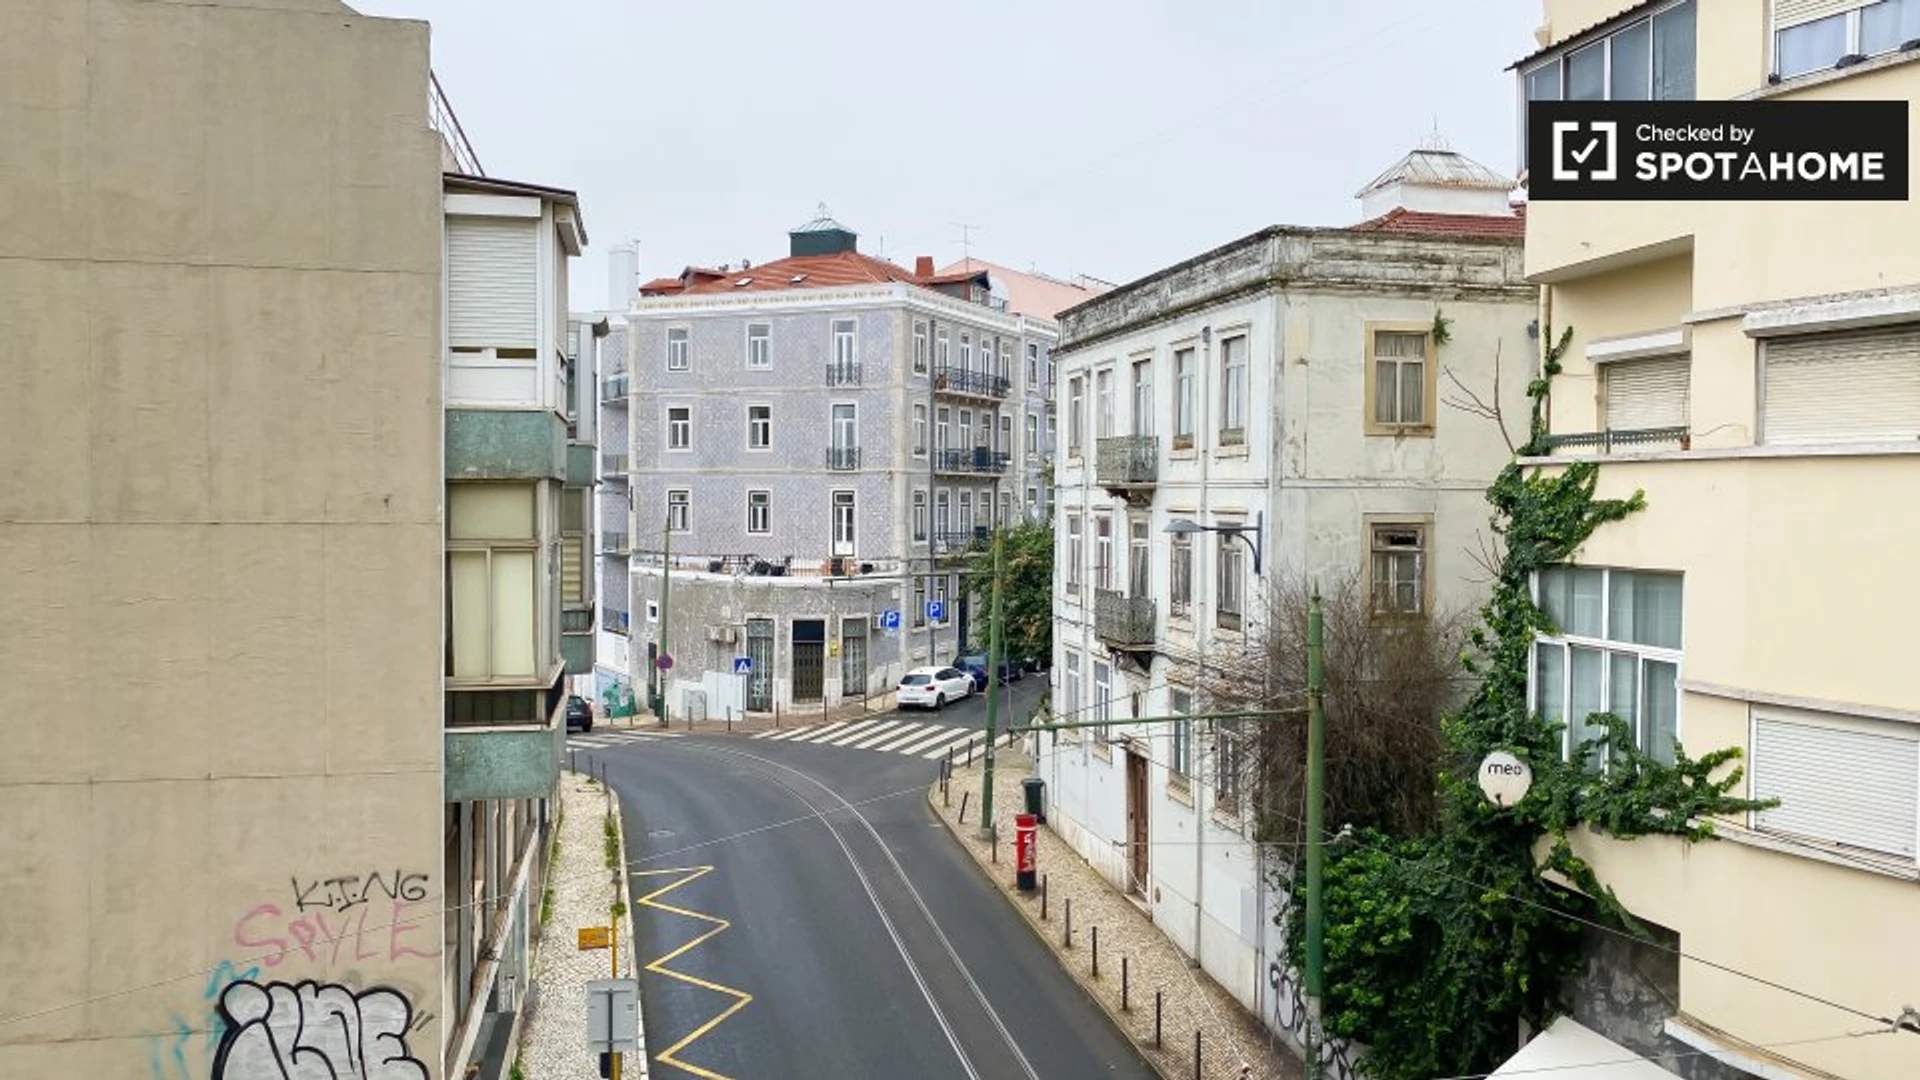 Monatliche Vermietung von Zimmern in Lissabon